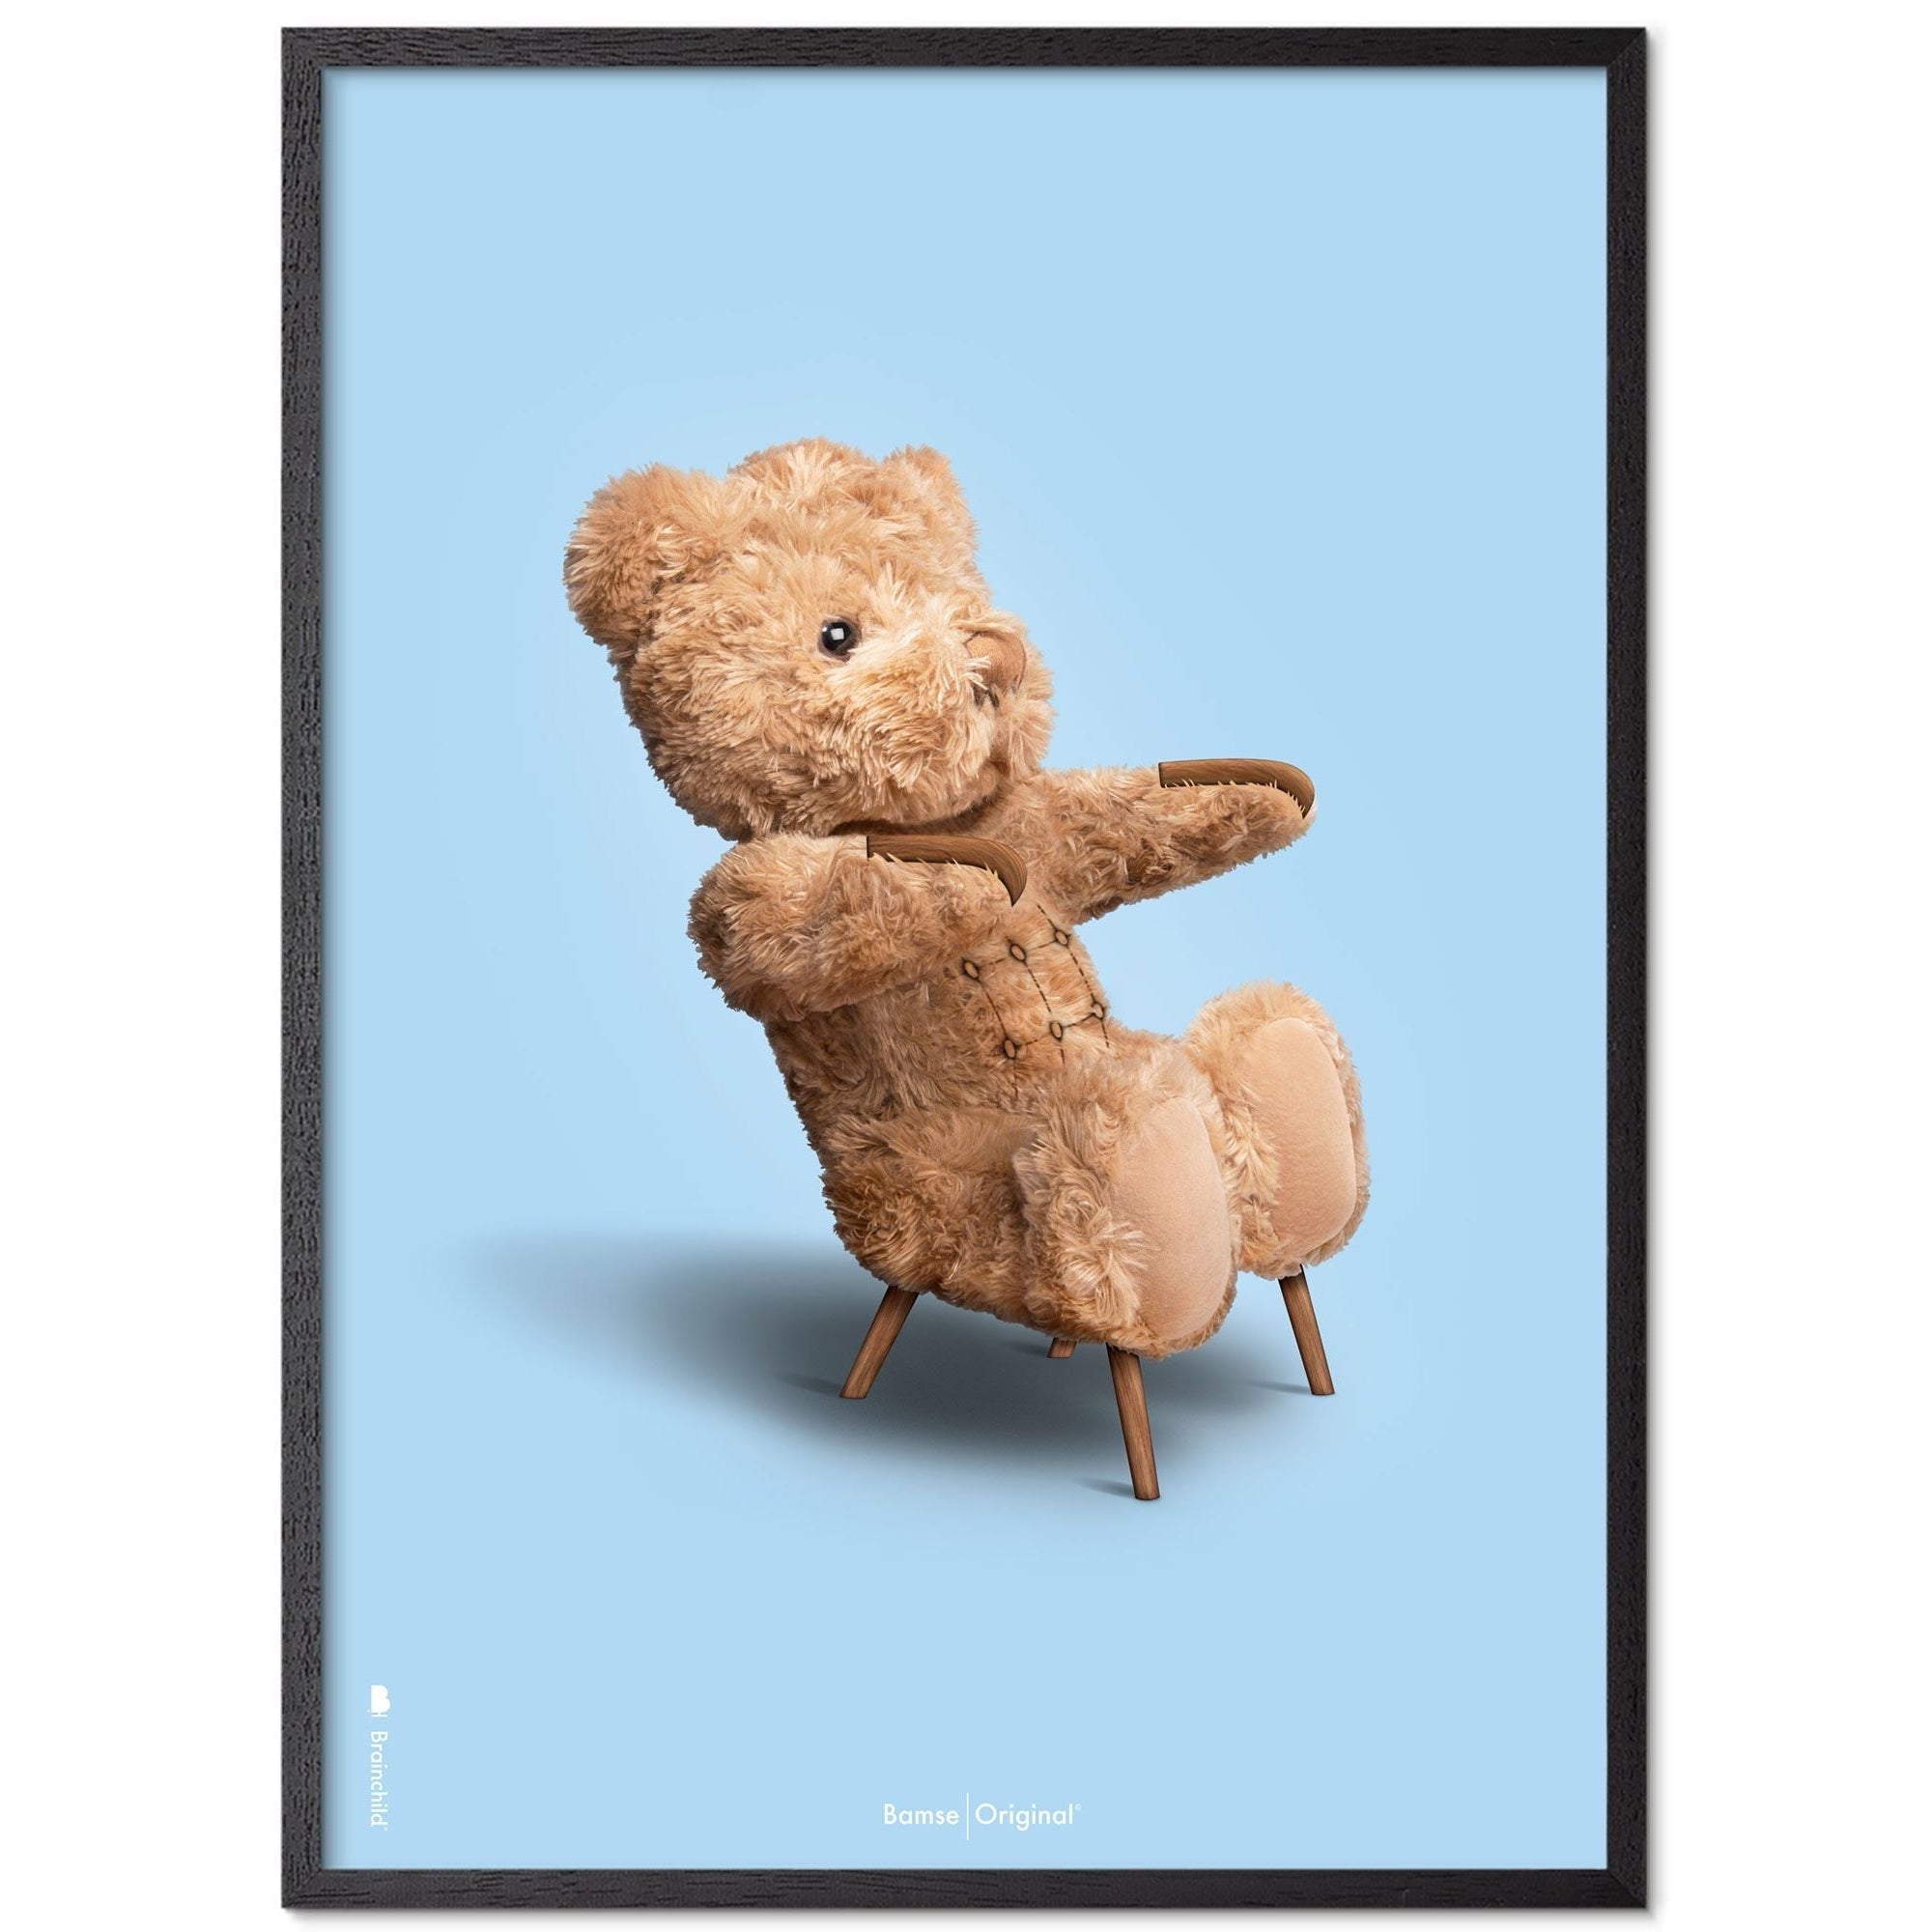 Brainchild Teddy Bear Classic plakát z plakátu vyrobený z černého lakovaného dřeva 30x40 cm, světle modré pozadí